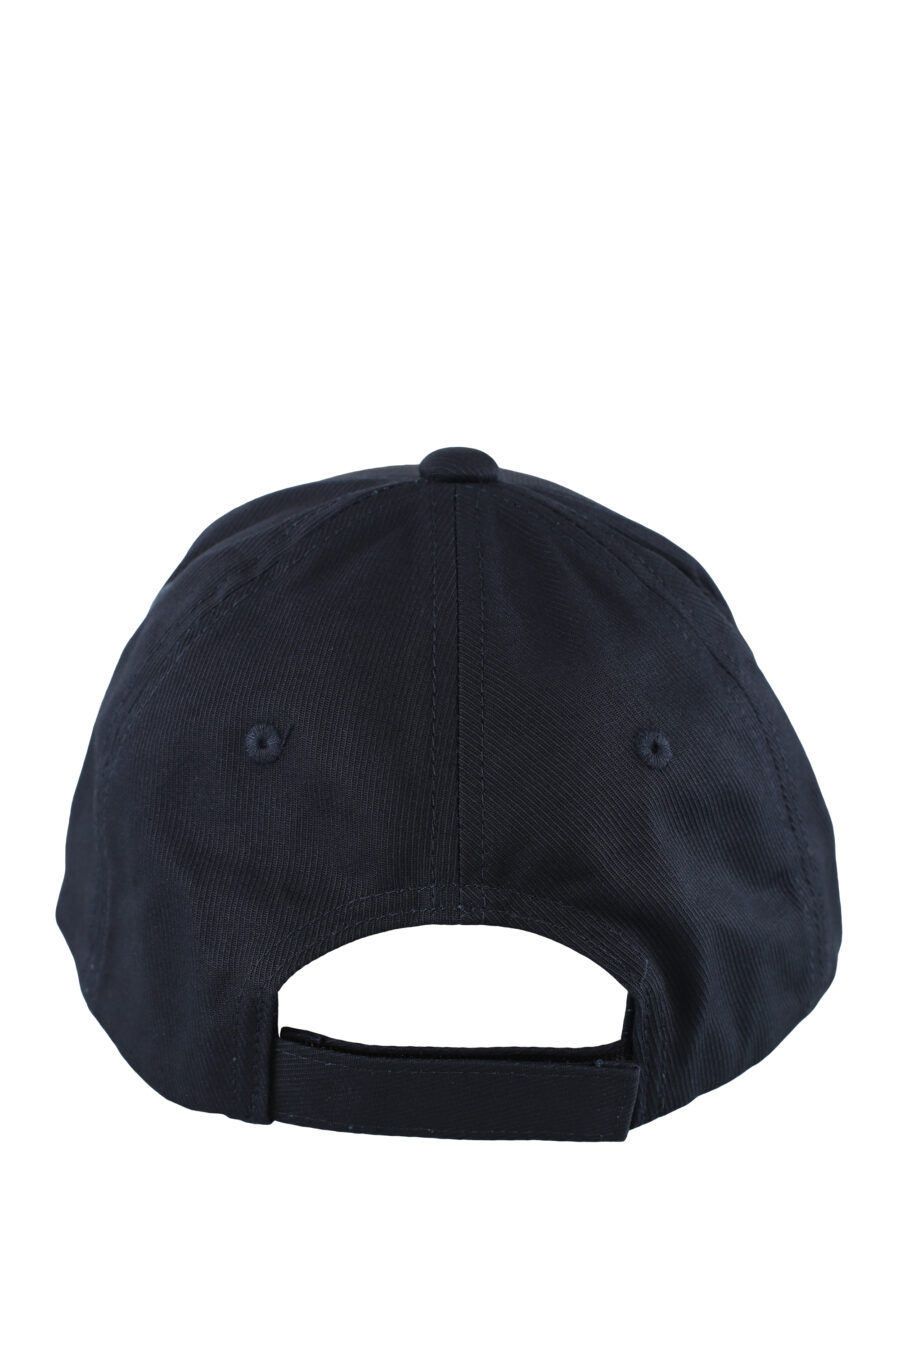 Gorra azul oscura con logo aguila blanco - IMG 5163